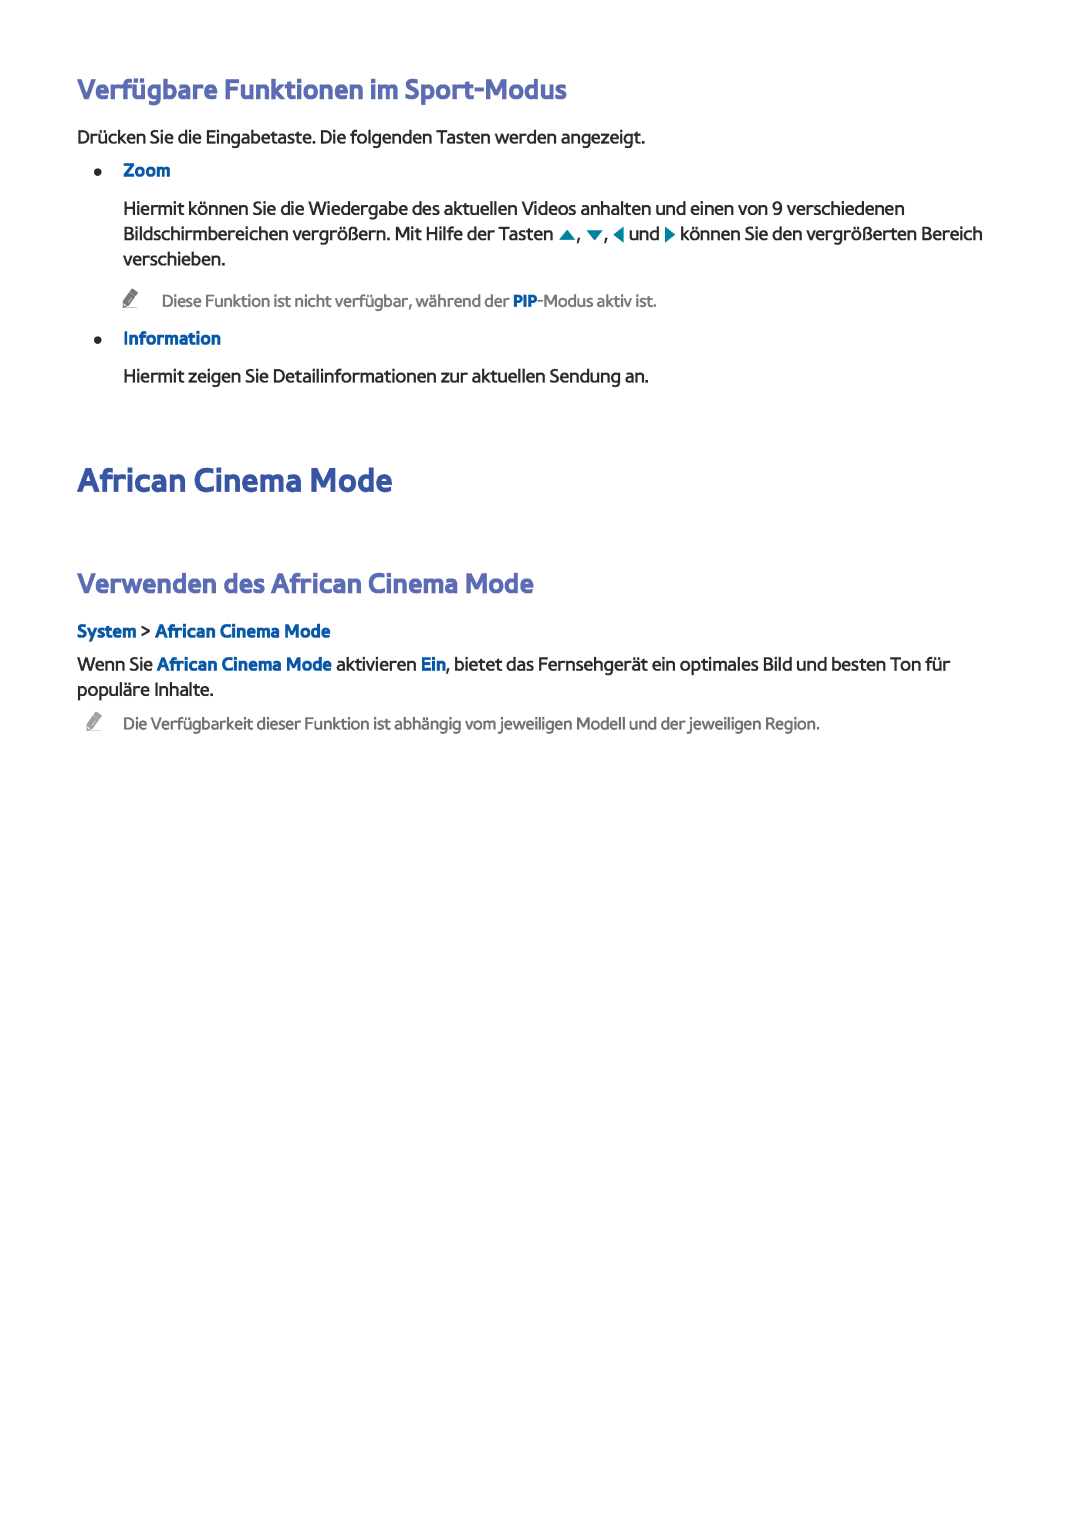 Samsung UE58J5200AWXXH Verfügbare Funktionen im Sport-Modus, Verwenden des African Cinema Mode, Zoom, Information 